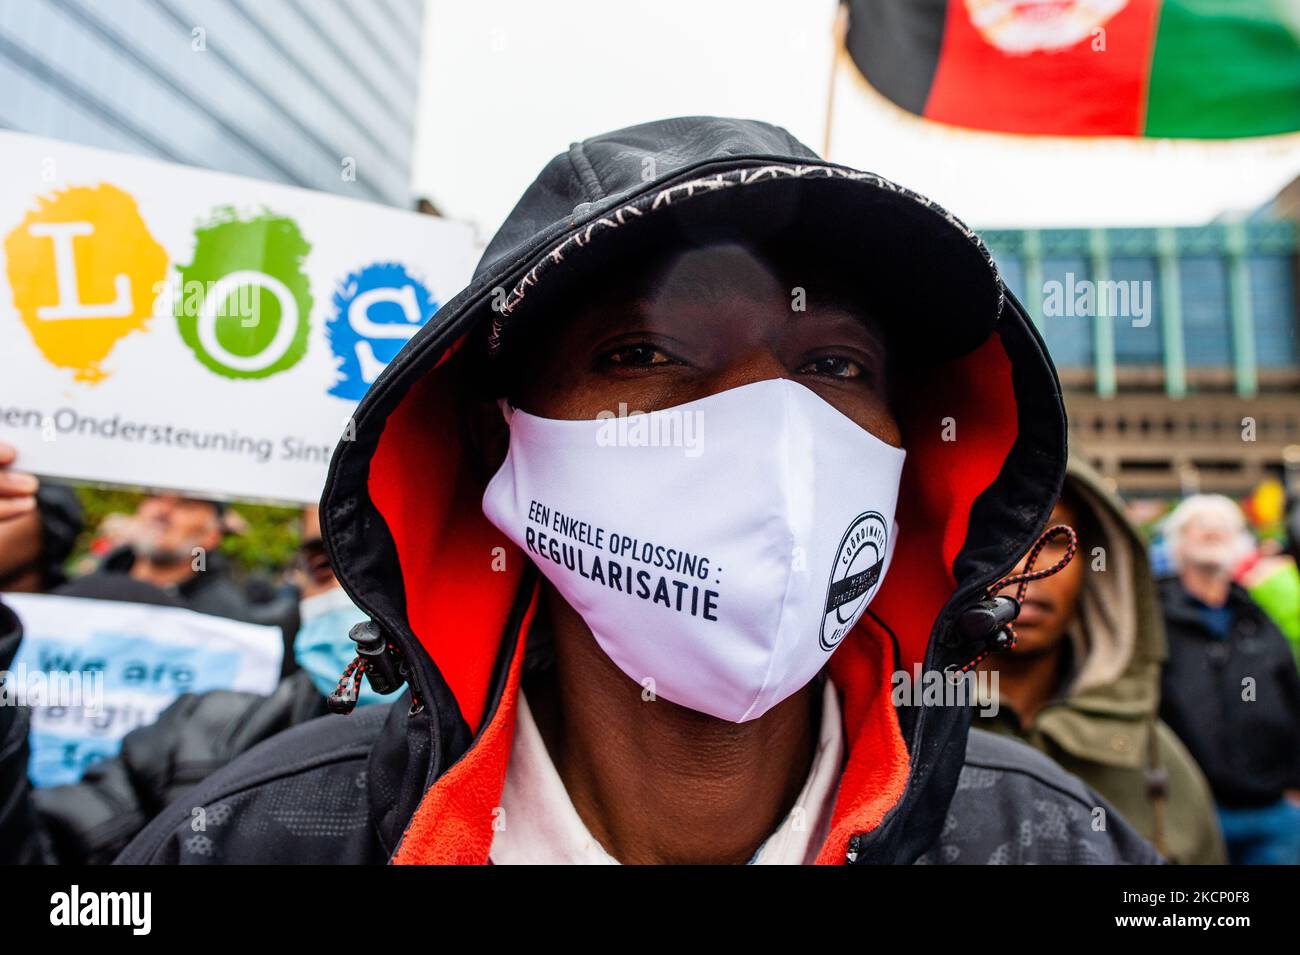 Un homme porte un masque buccal avec un message en faveur des immigrés clandestins, lors de la manifestation "We are Belgium too" organisée à Bruxelles, sur 3 octobre 2021. (Photo par Romy Arroyo Fernandez/NurPhoto) Banque D'Images